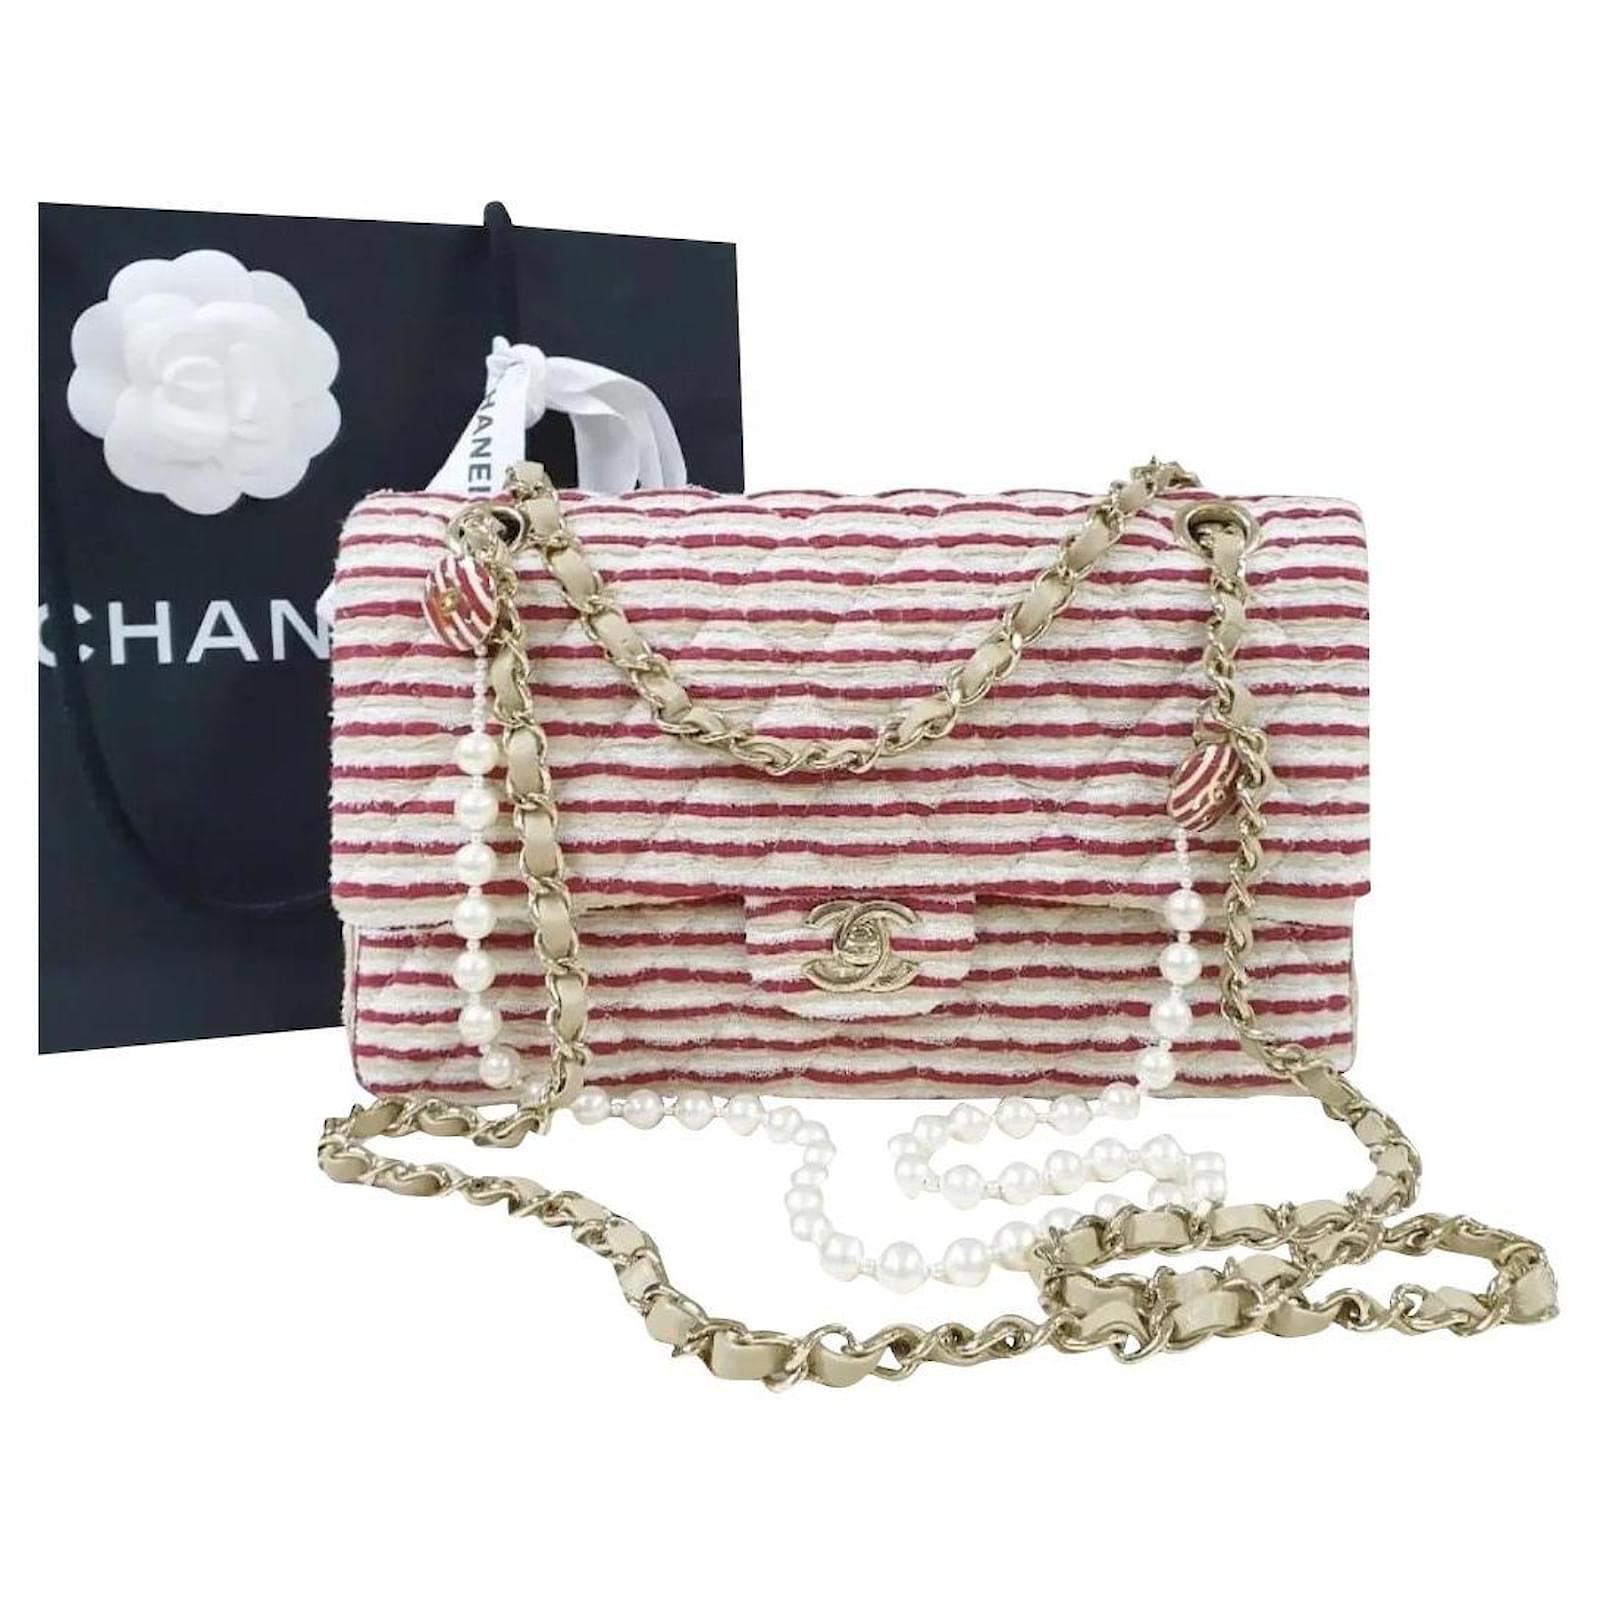 coco chanel new handbags